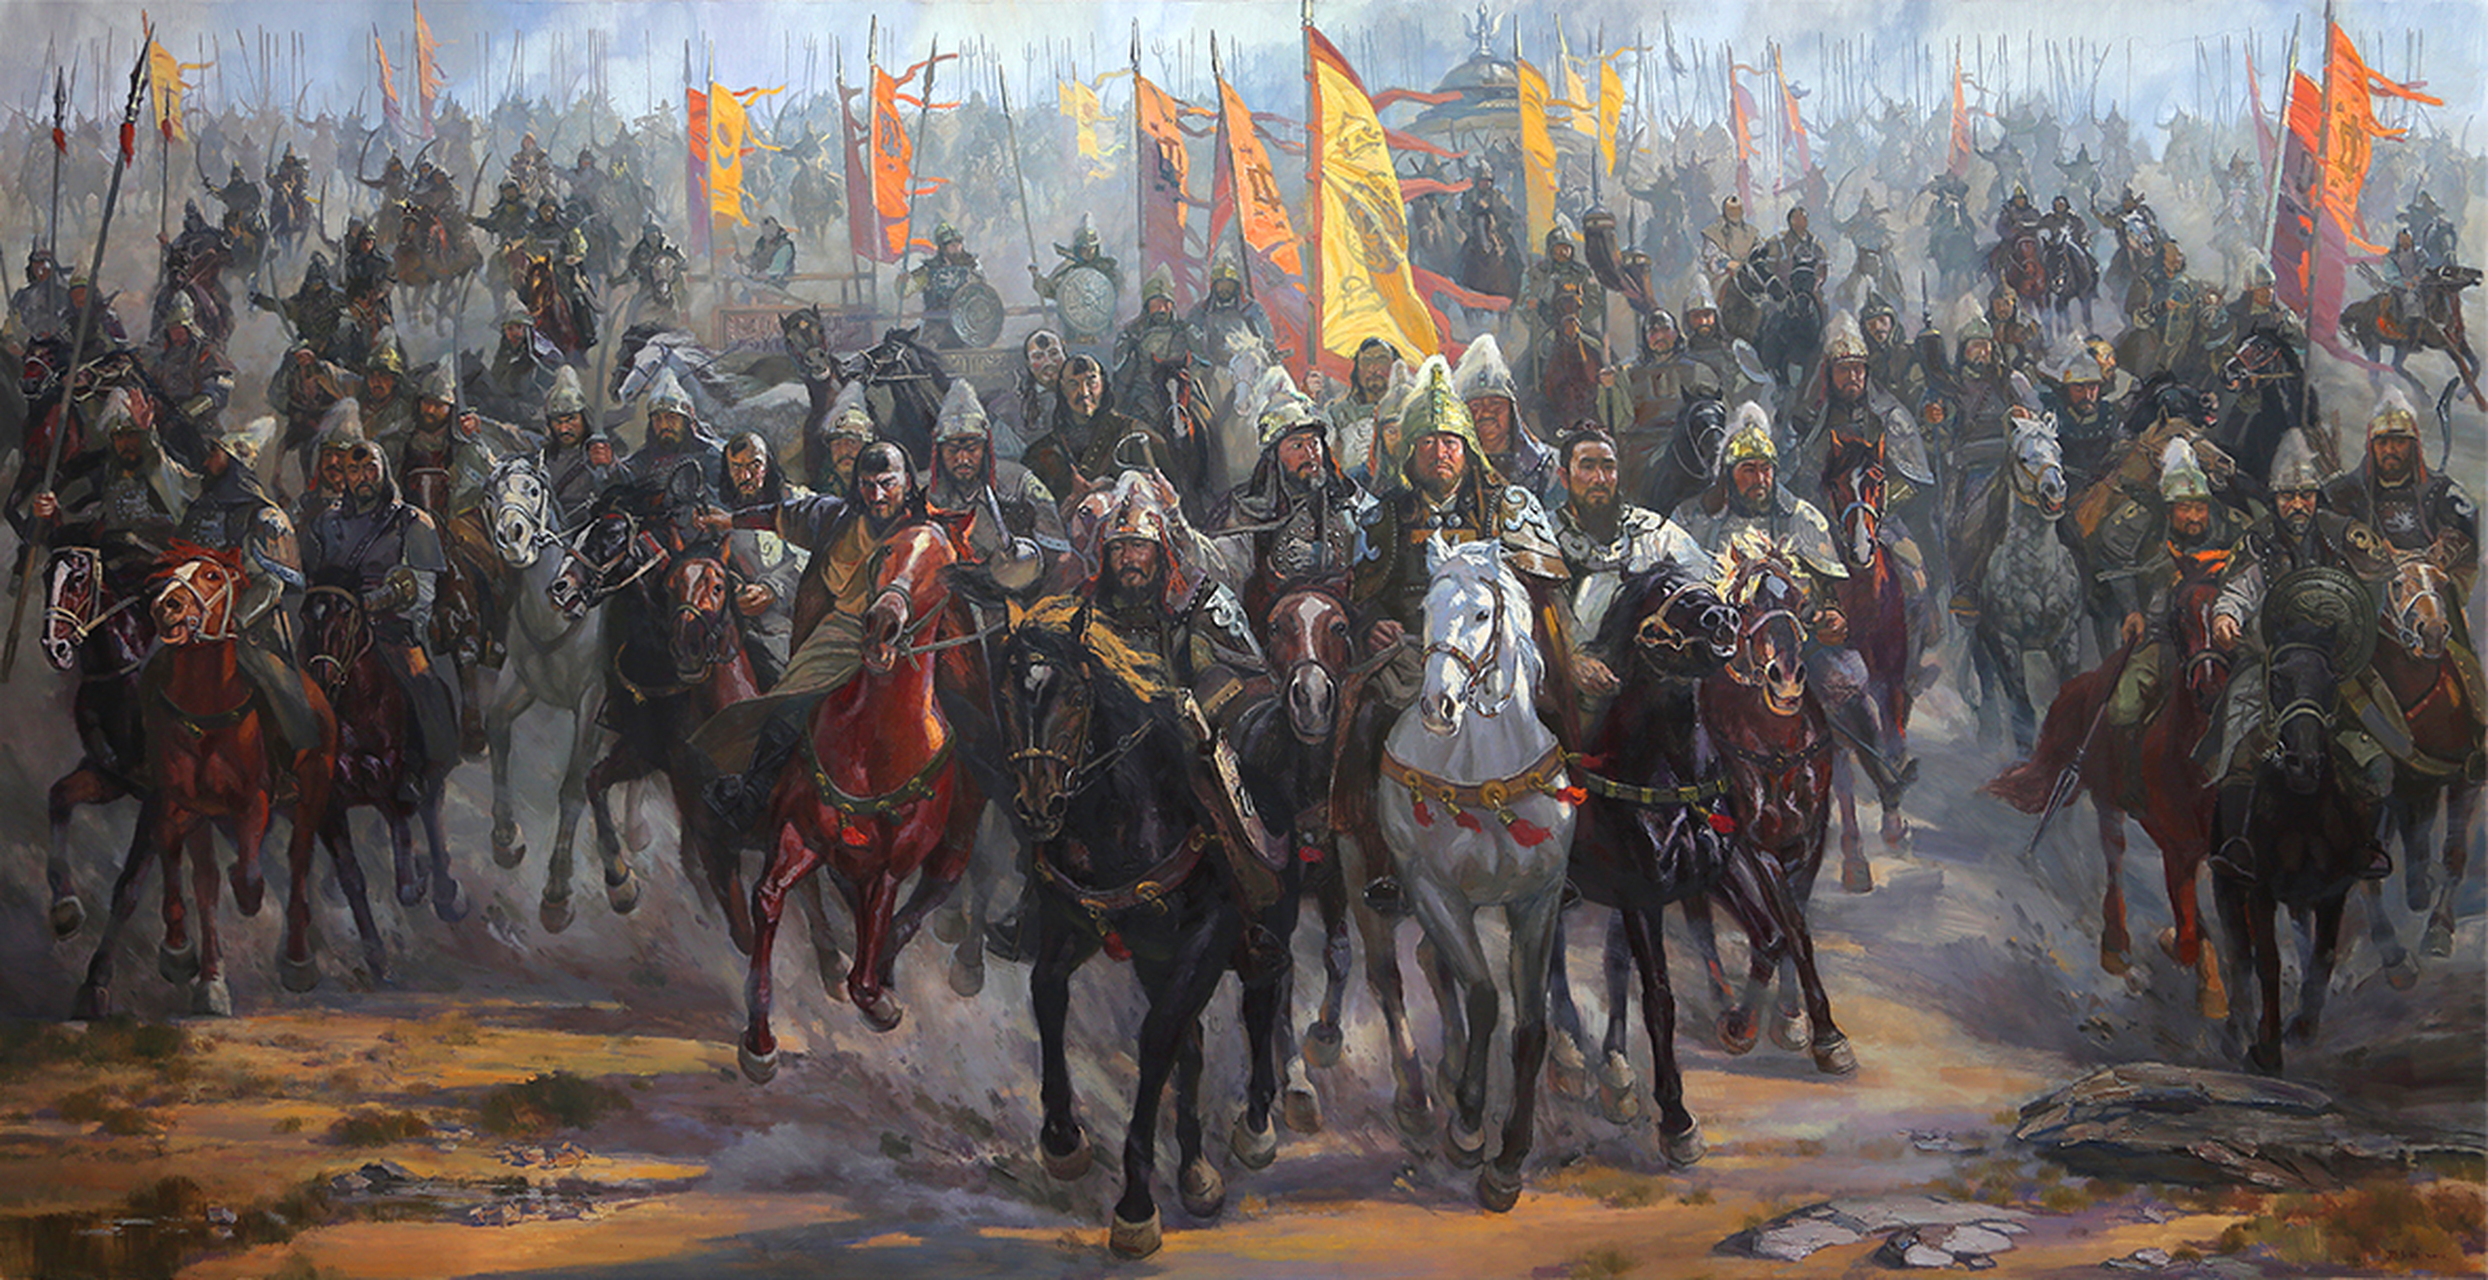 234年,蒙古铁骑凭借娴熟的战术和中原先进科技,第二次横扫欧洲